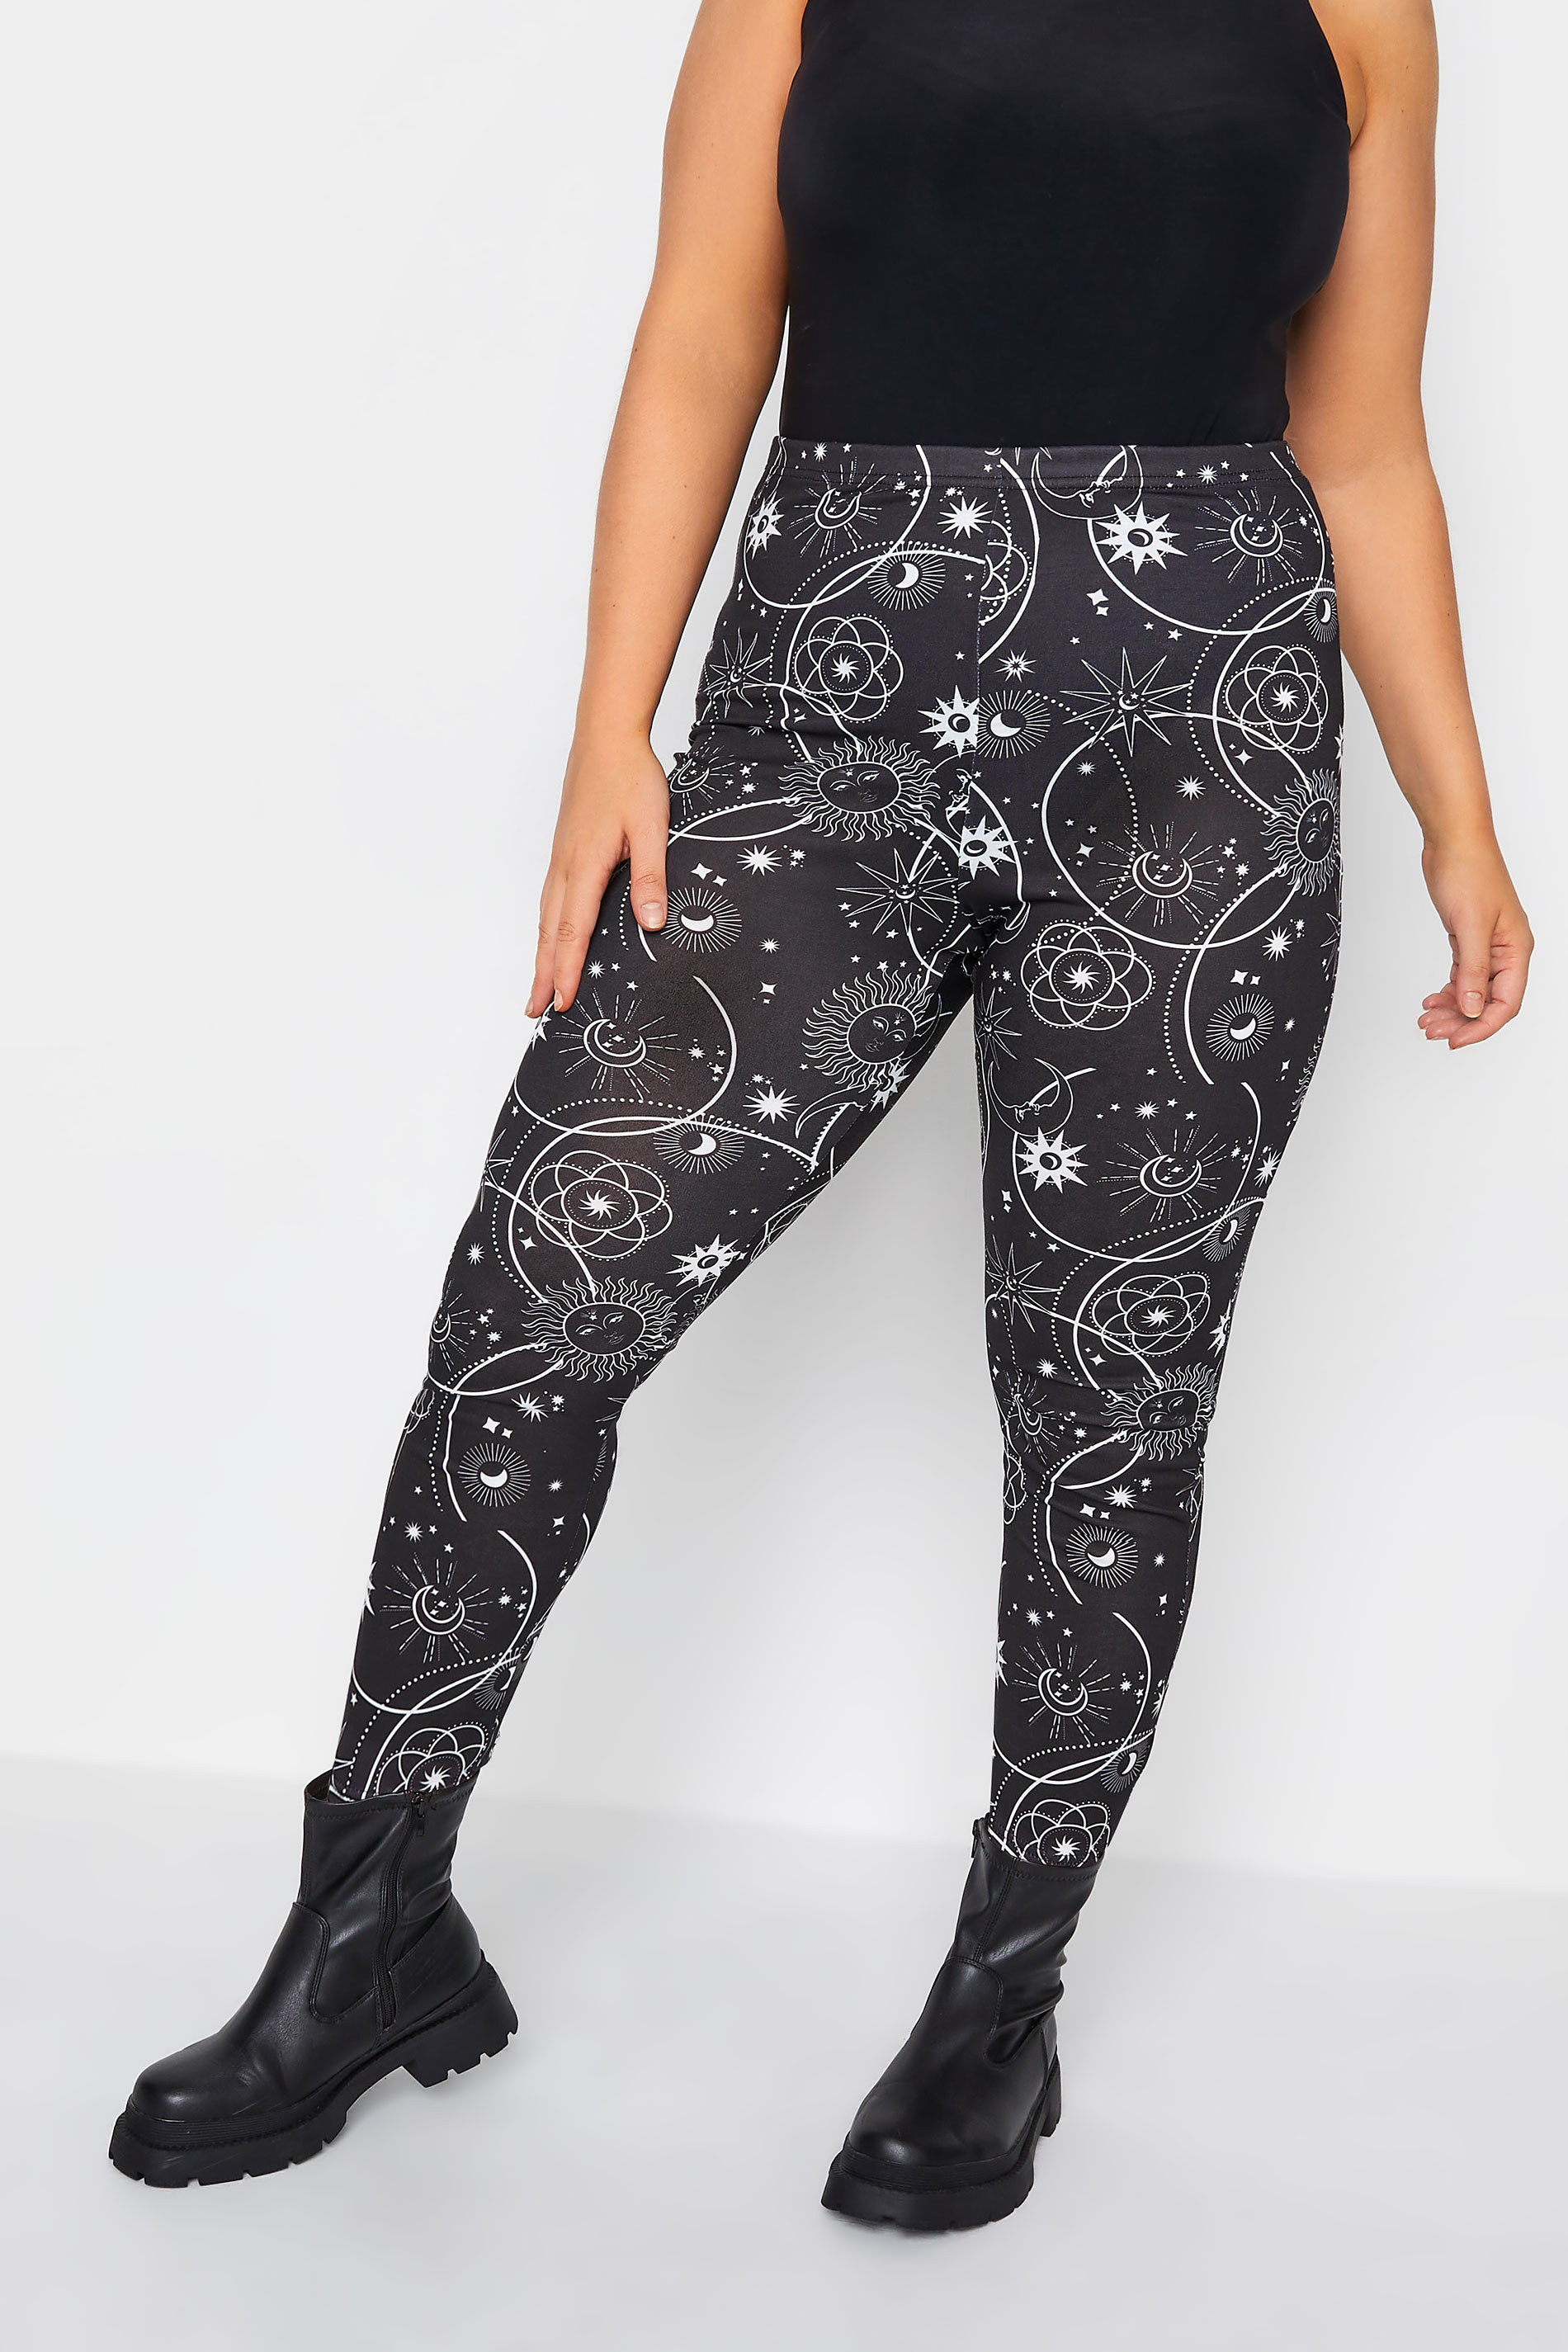 Stole på Åben uddannelse YOURS Curve Black Halloween Celestial Moon Print Leggings | Yours Clothing